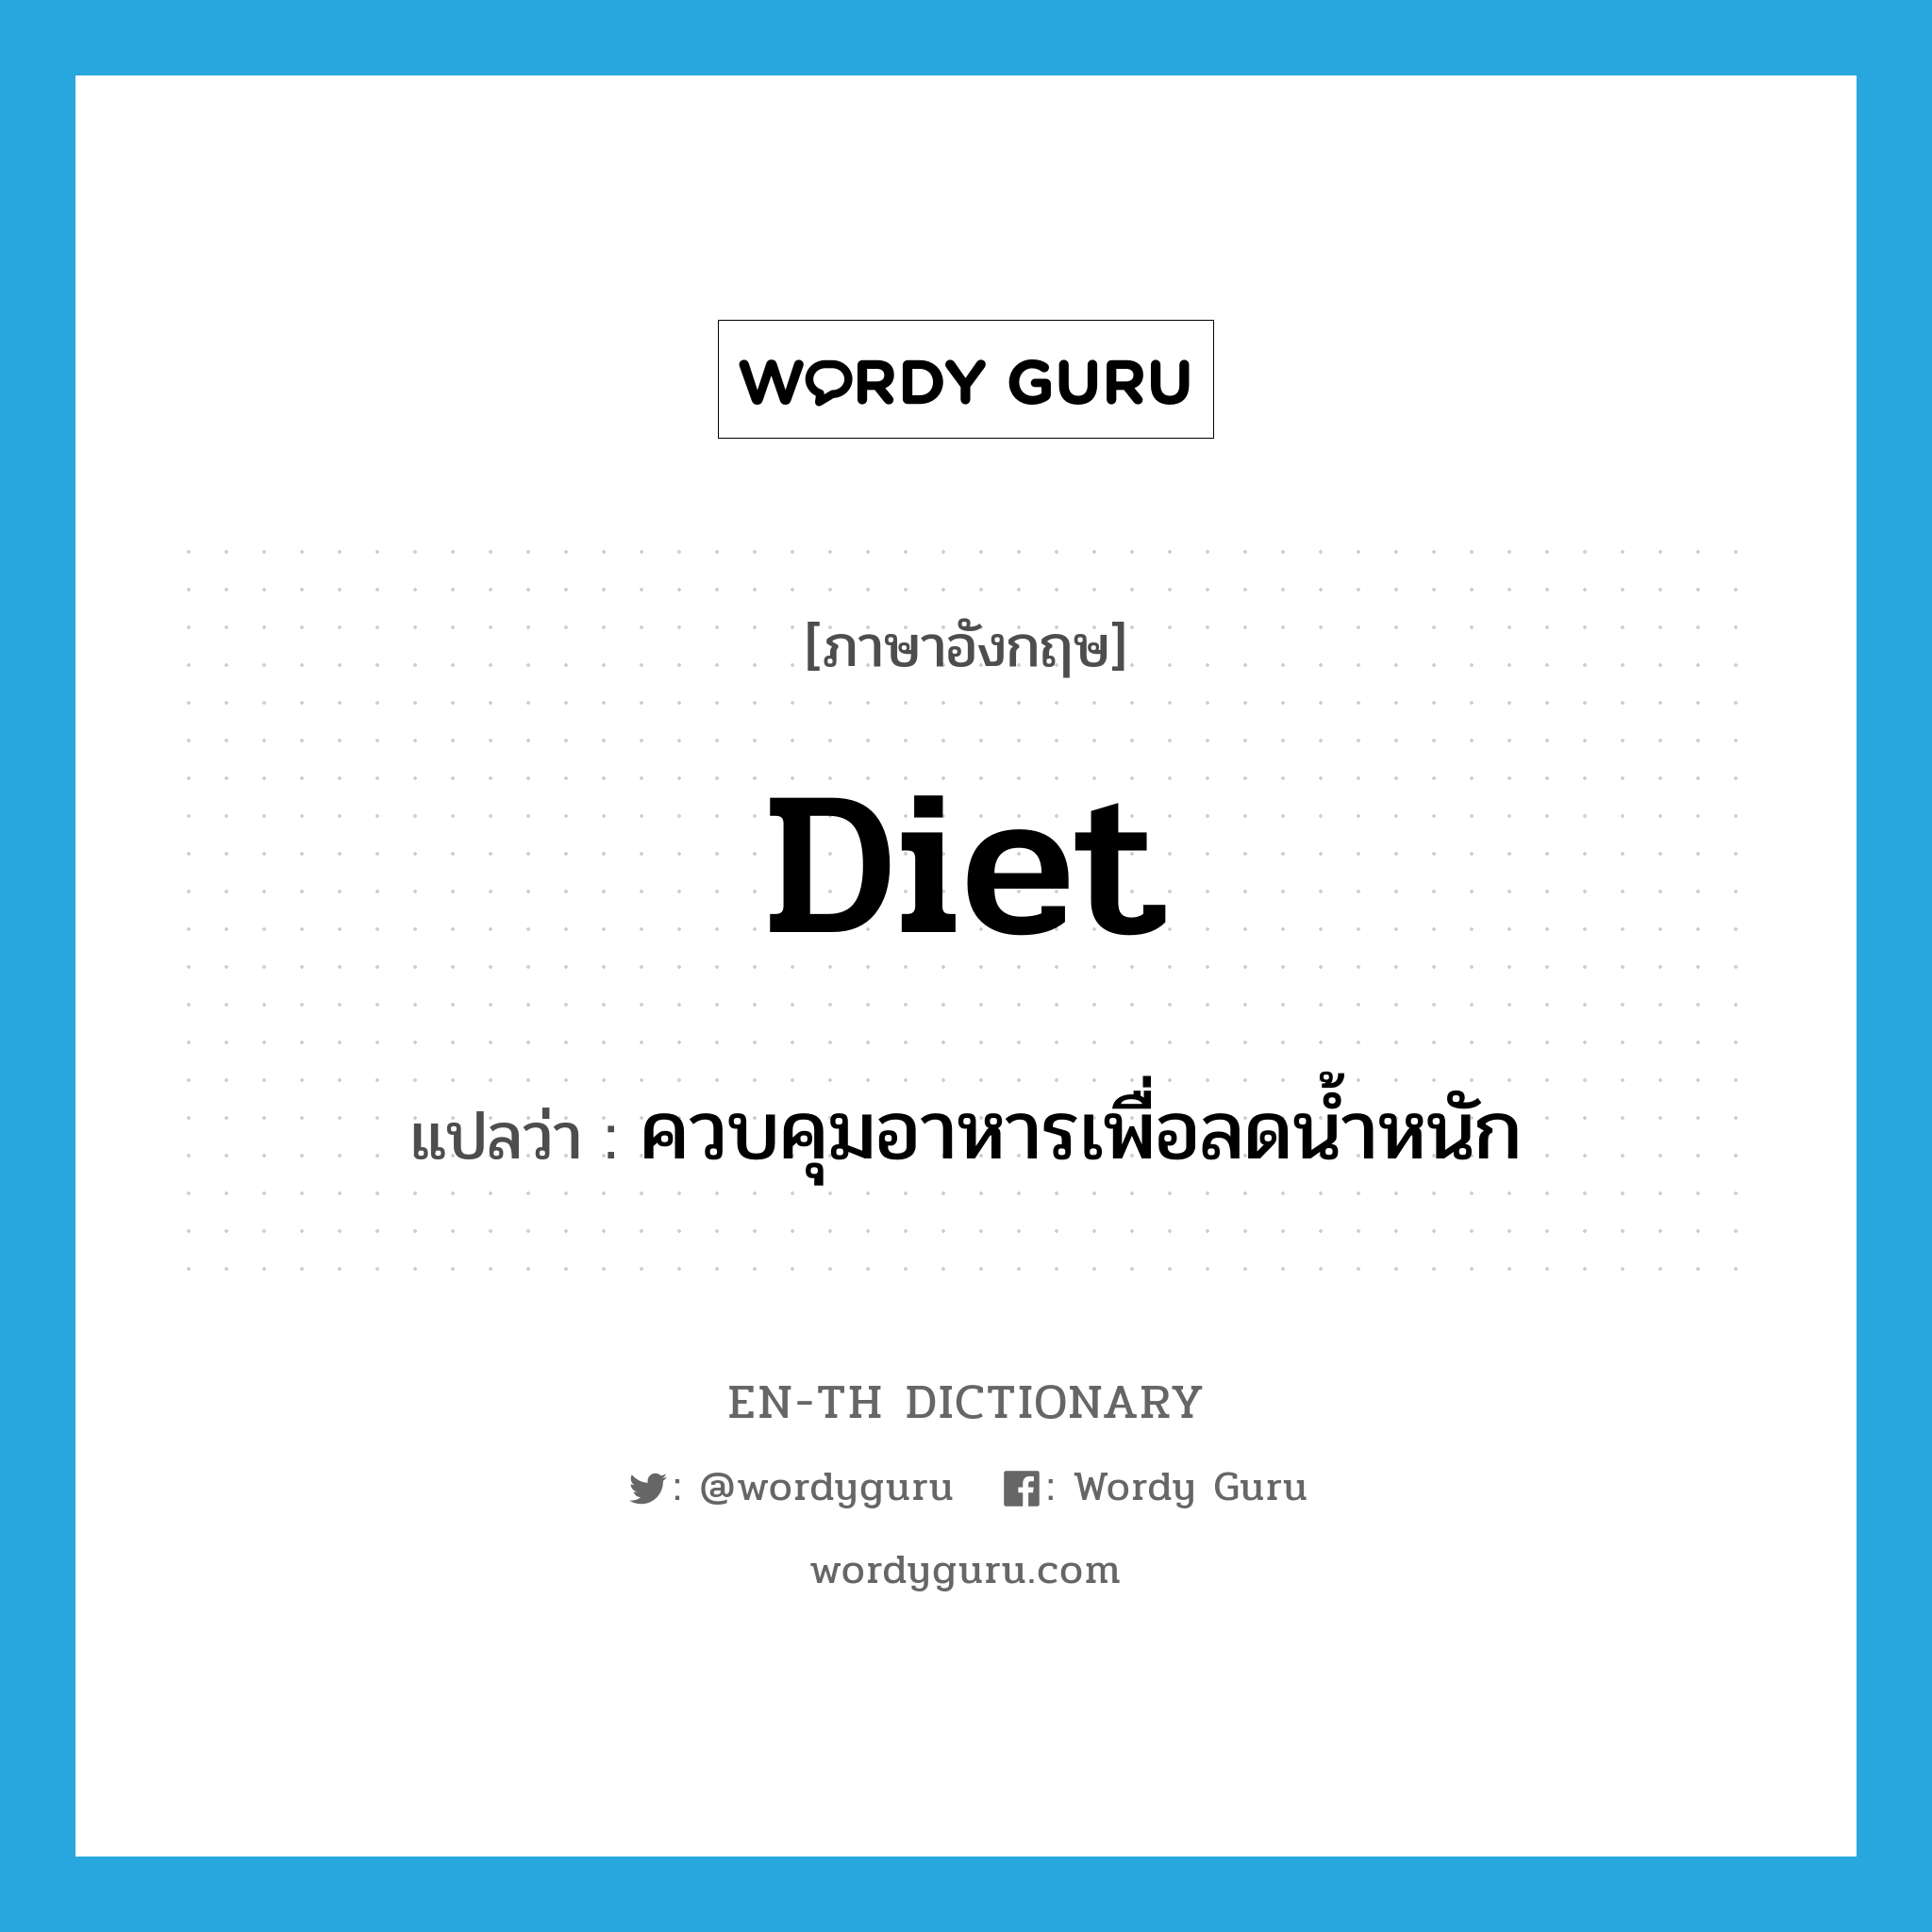 ควบคุมอาหารเพื่อลดน้ำหนัก ภาษาอังกฤษ?, คำศัพท์ภาษาอังกฤษ ควบคุมอาหารเพื่อลดน้ำหนัก แปลว่า diet ประเภท VI หมวด VI